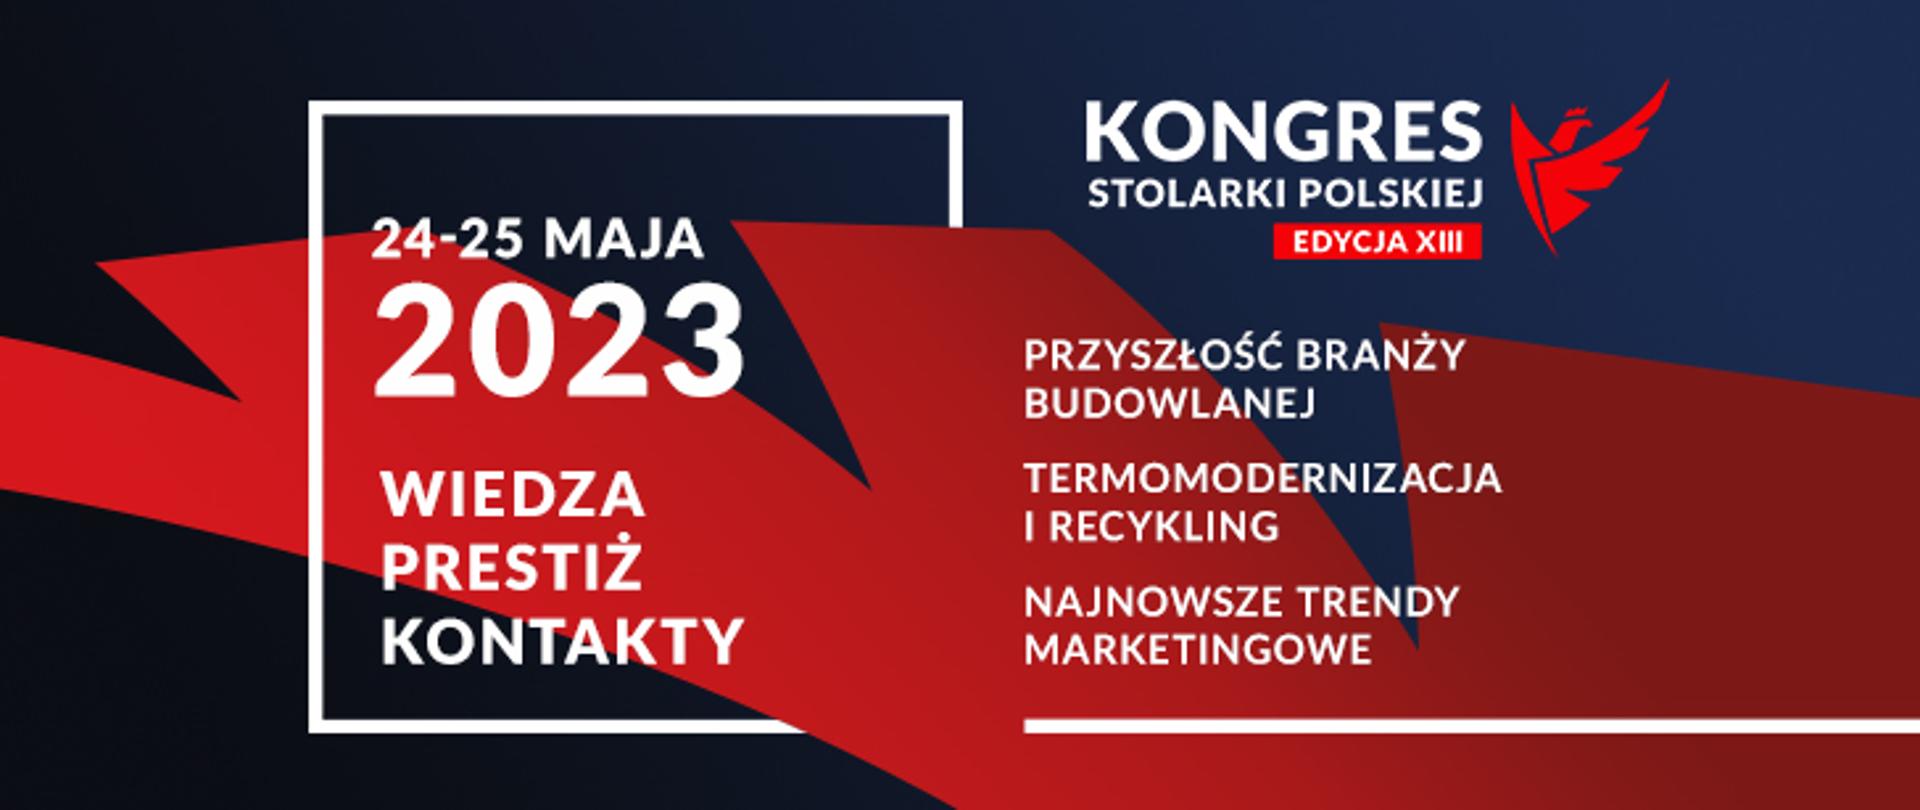 grafika trzynastego Kongresu Stolarki Polskiej z datą 24-25 maja 2023